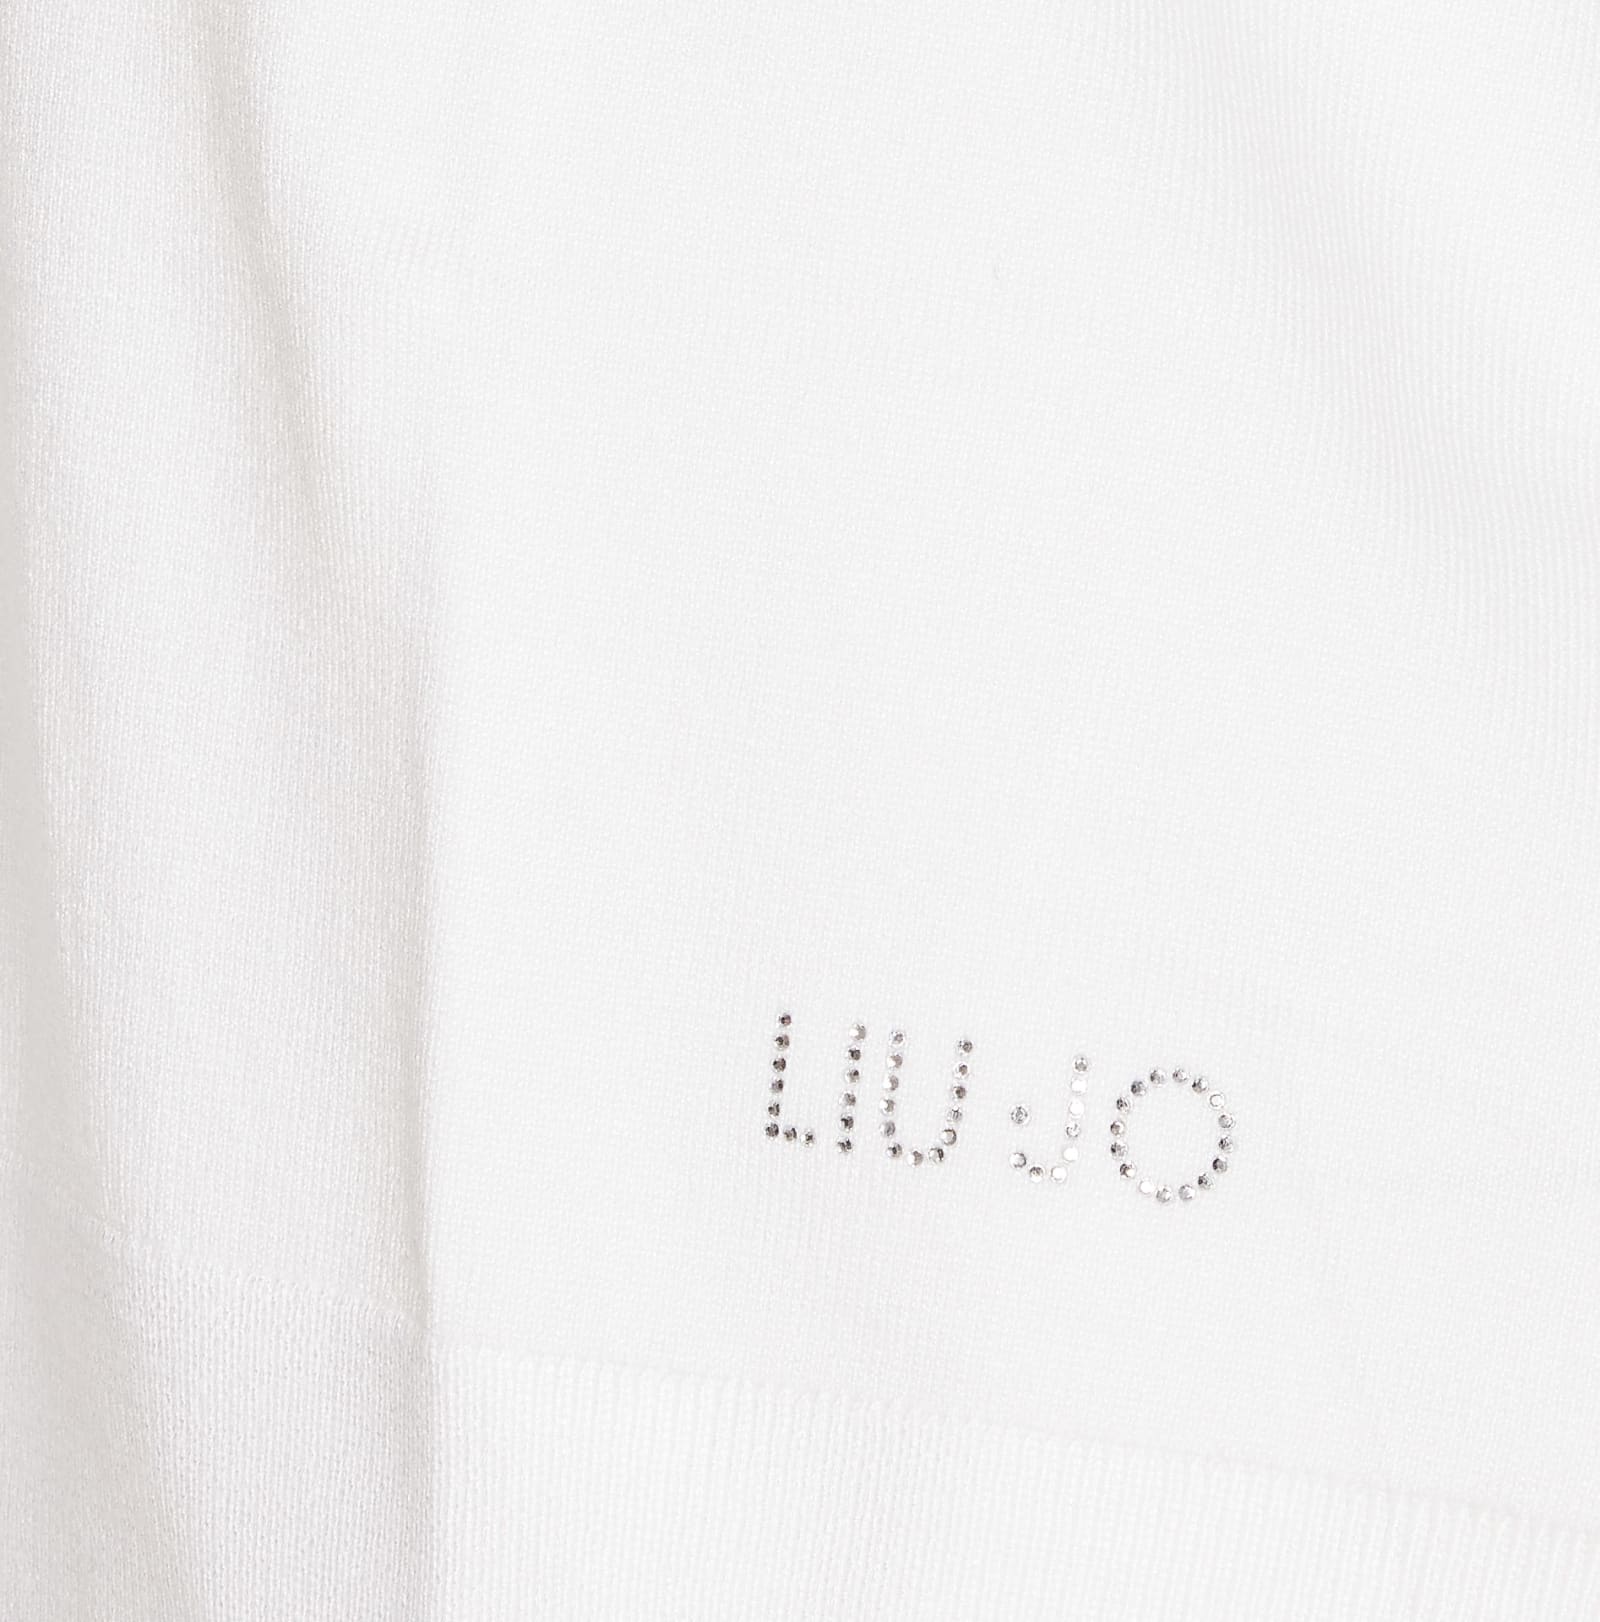 Shop Liu •jo Sweater In White